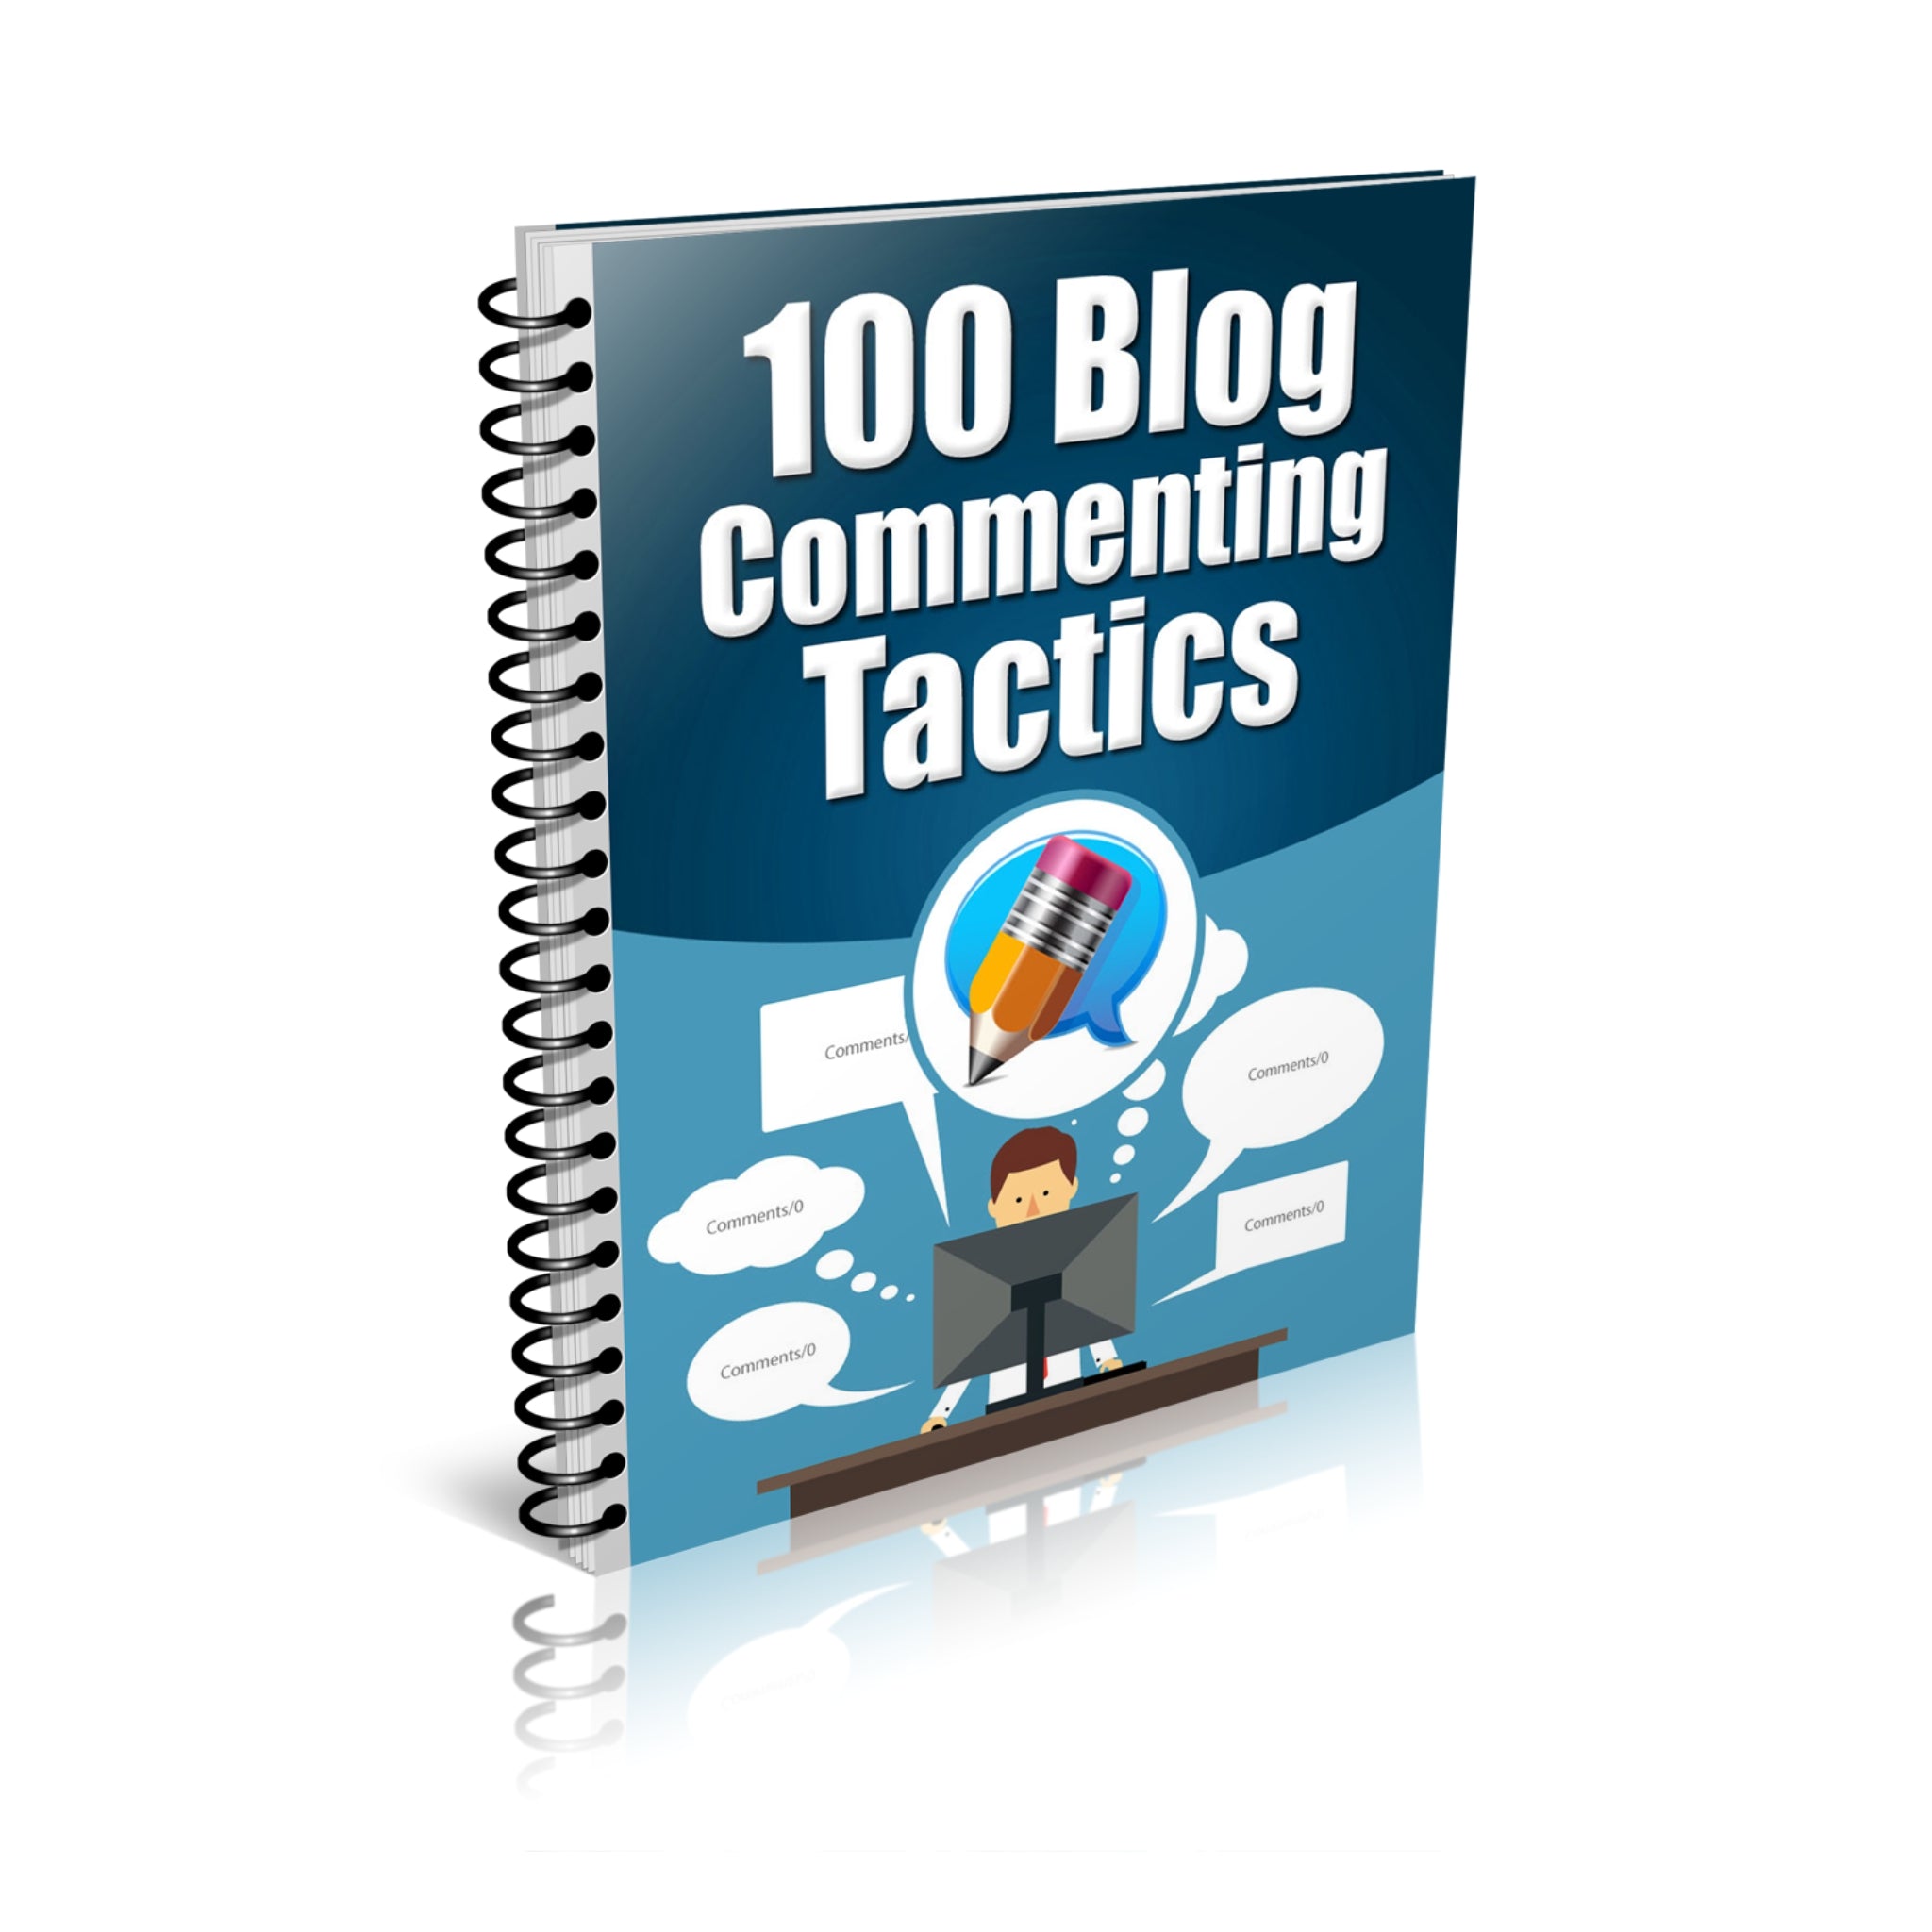 100 Blog Commenting Tactics Ebook